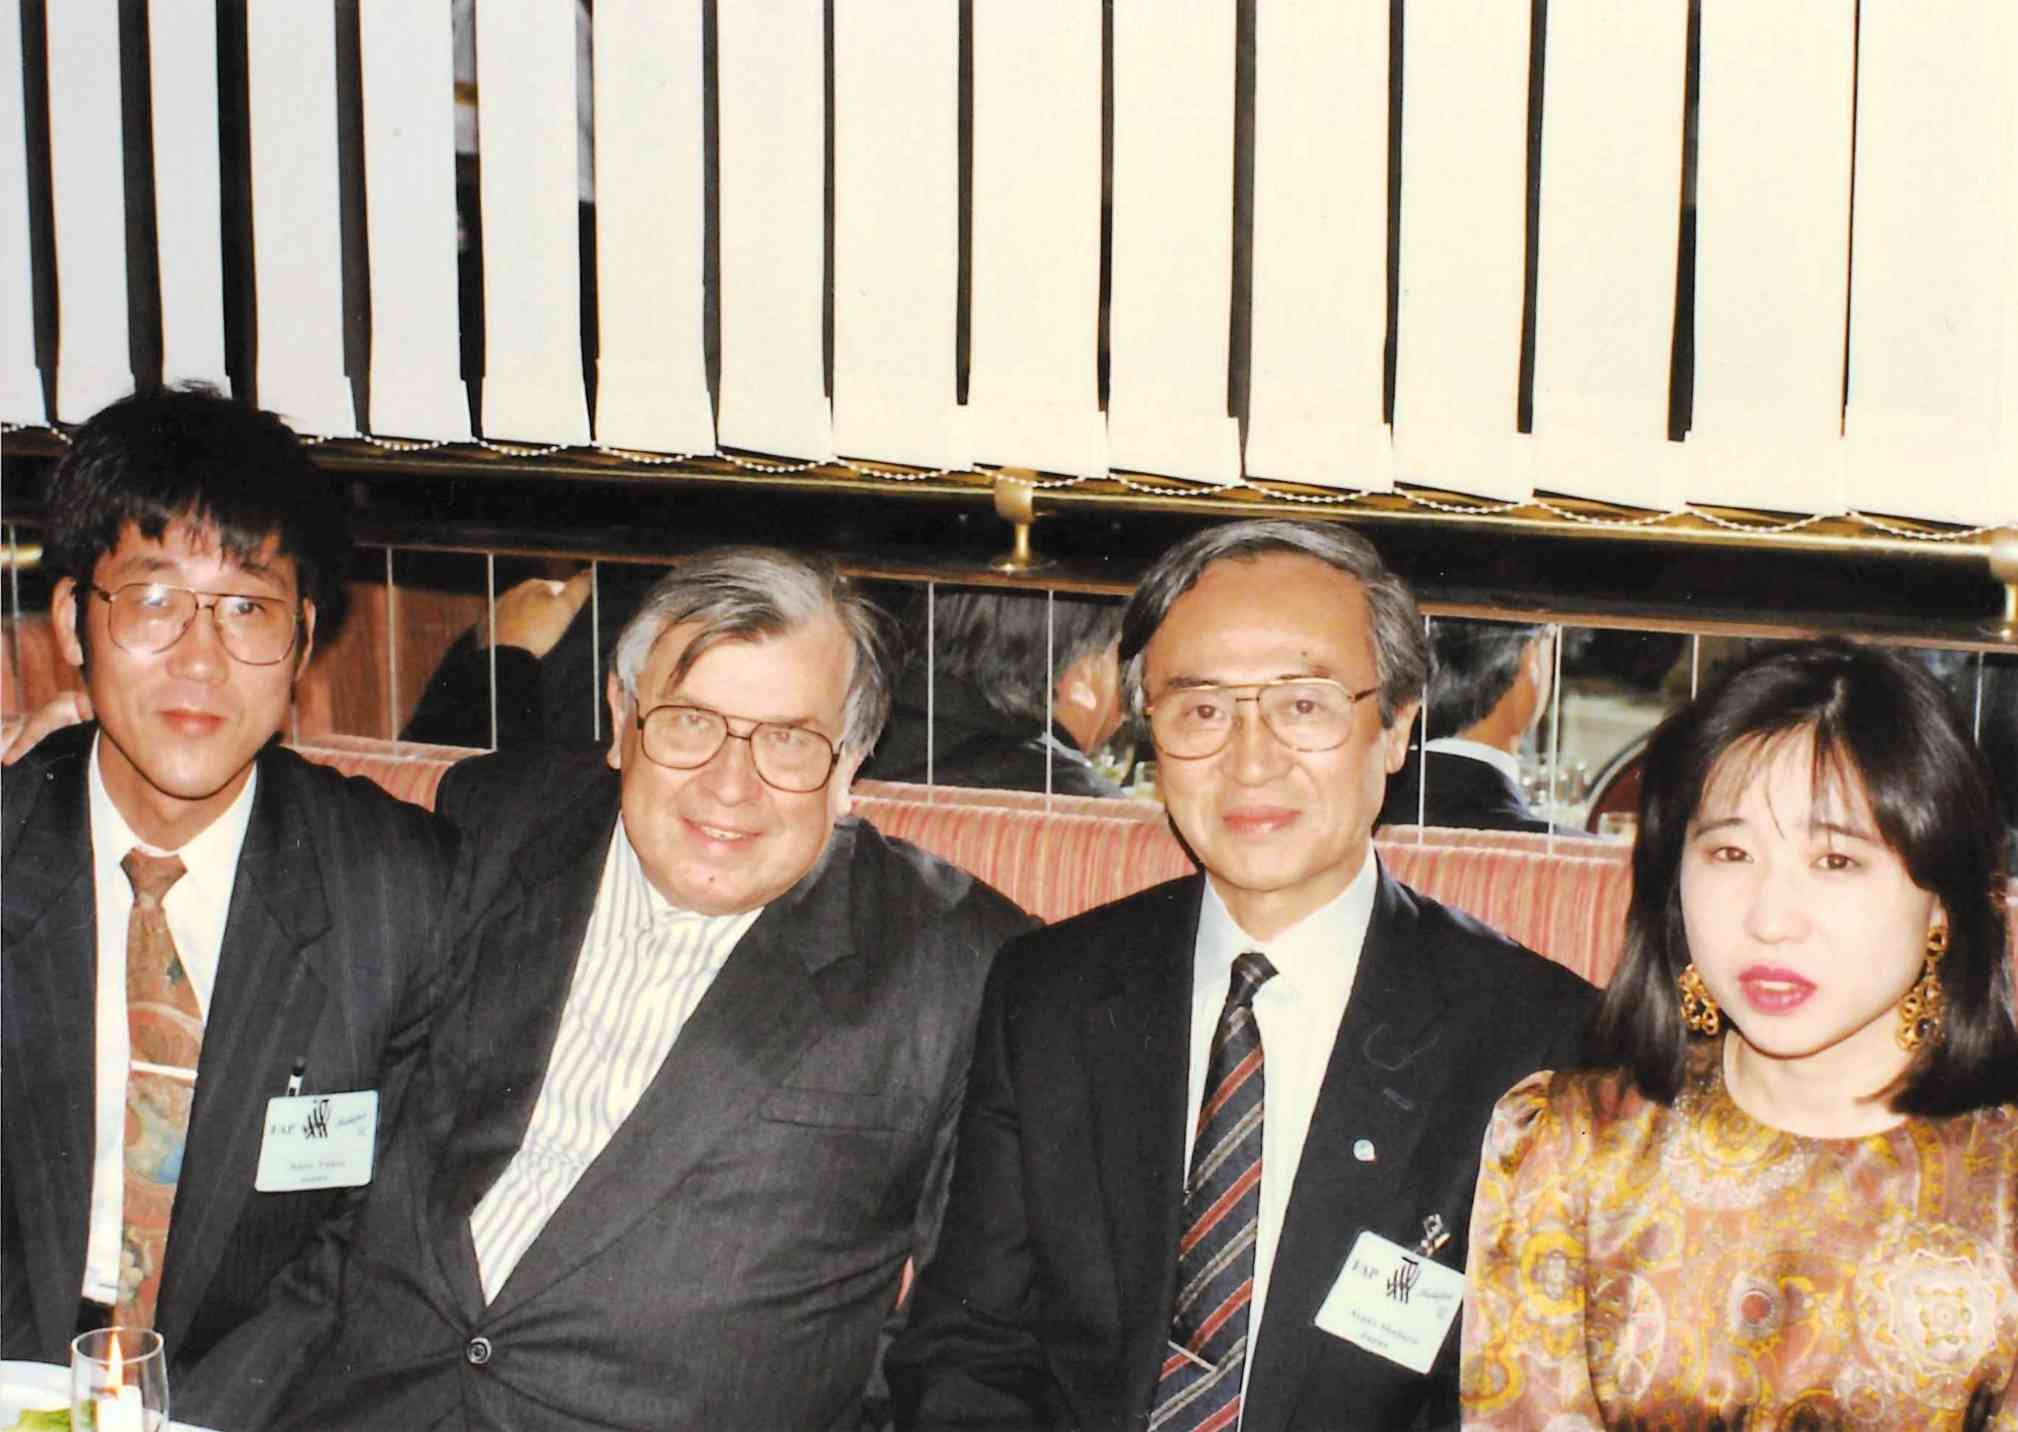 左から筆者、ノーベル医学生理学賞受賞者のガジュセック氏、恩師の荒木淑郎教授、筆者の妻恵子さん＝1991年、スウェーデン・シェレフテオ